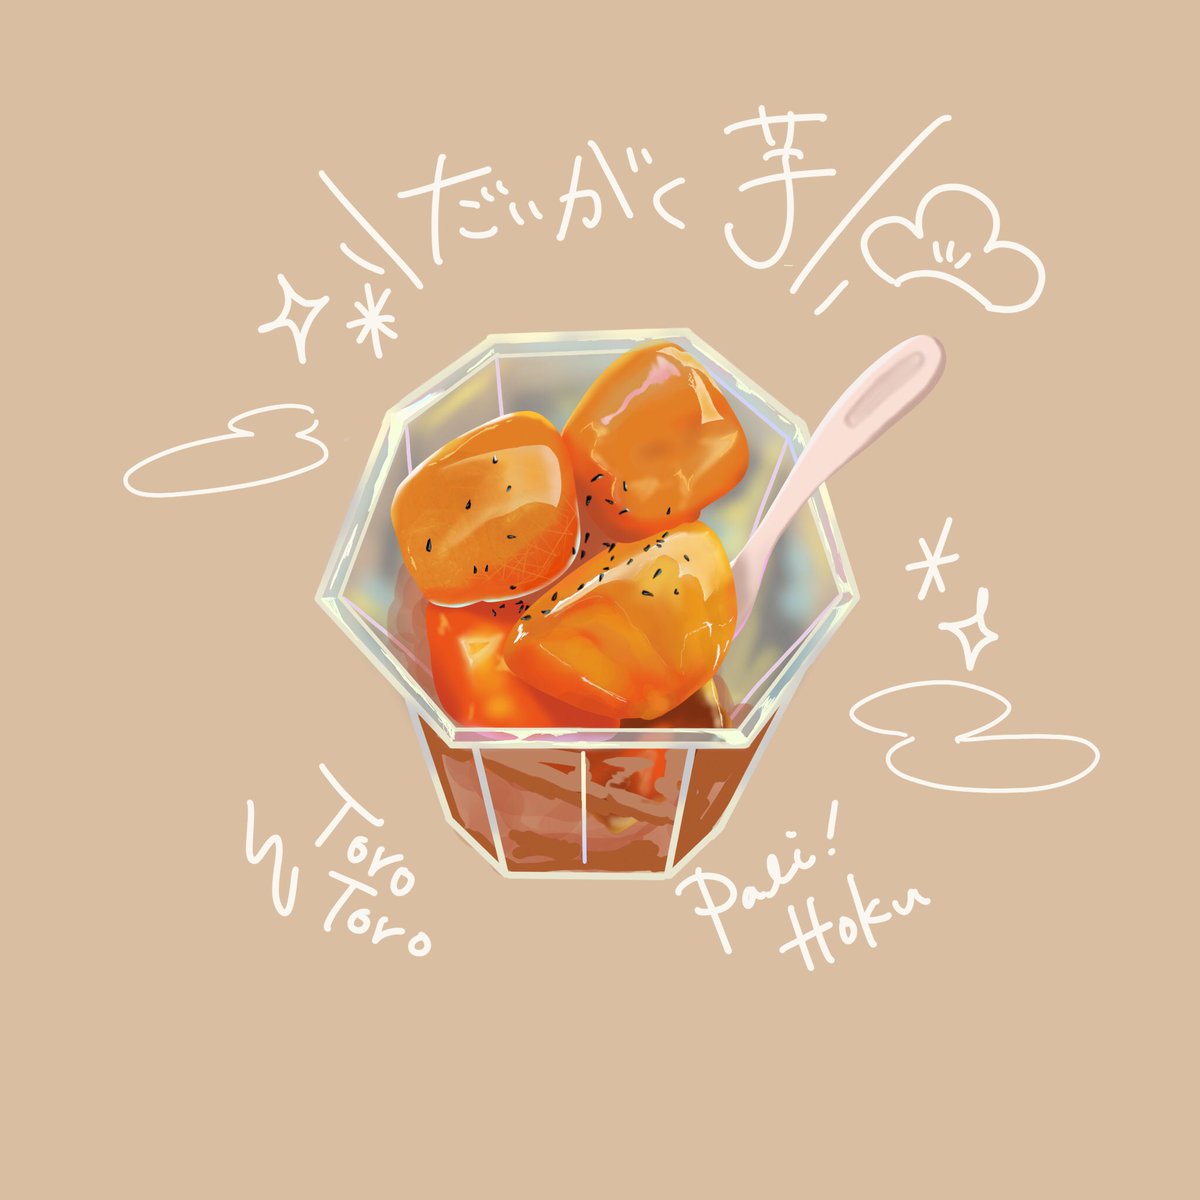 Tamagoyaki 大学芋 さつまいも イラスト好きな人と繋がりたい 1日1絵 芋づる式 さつまいもが美味しい季節 T Co Nrz8ivx9vu Twitter